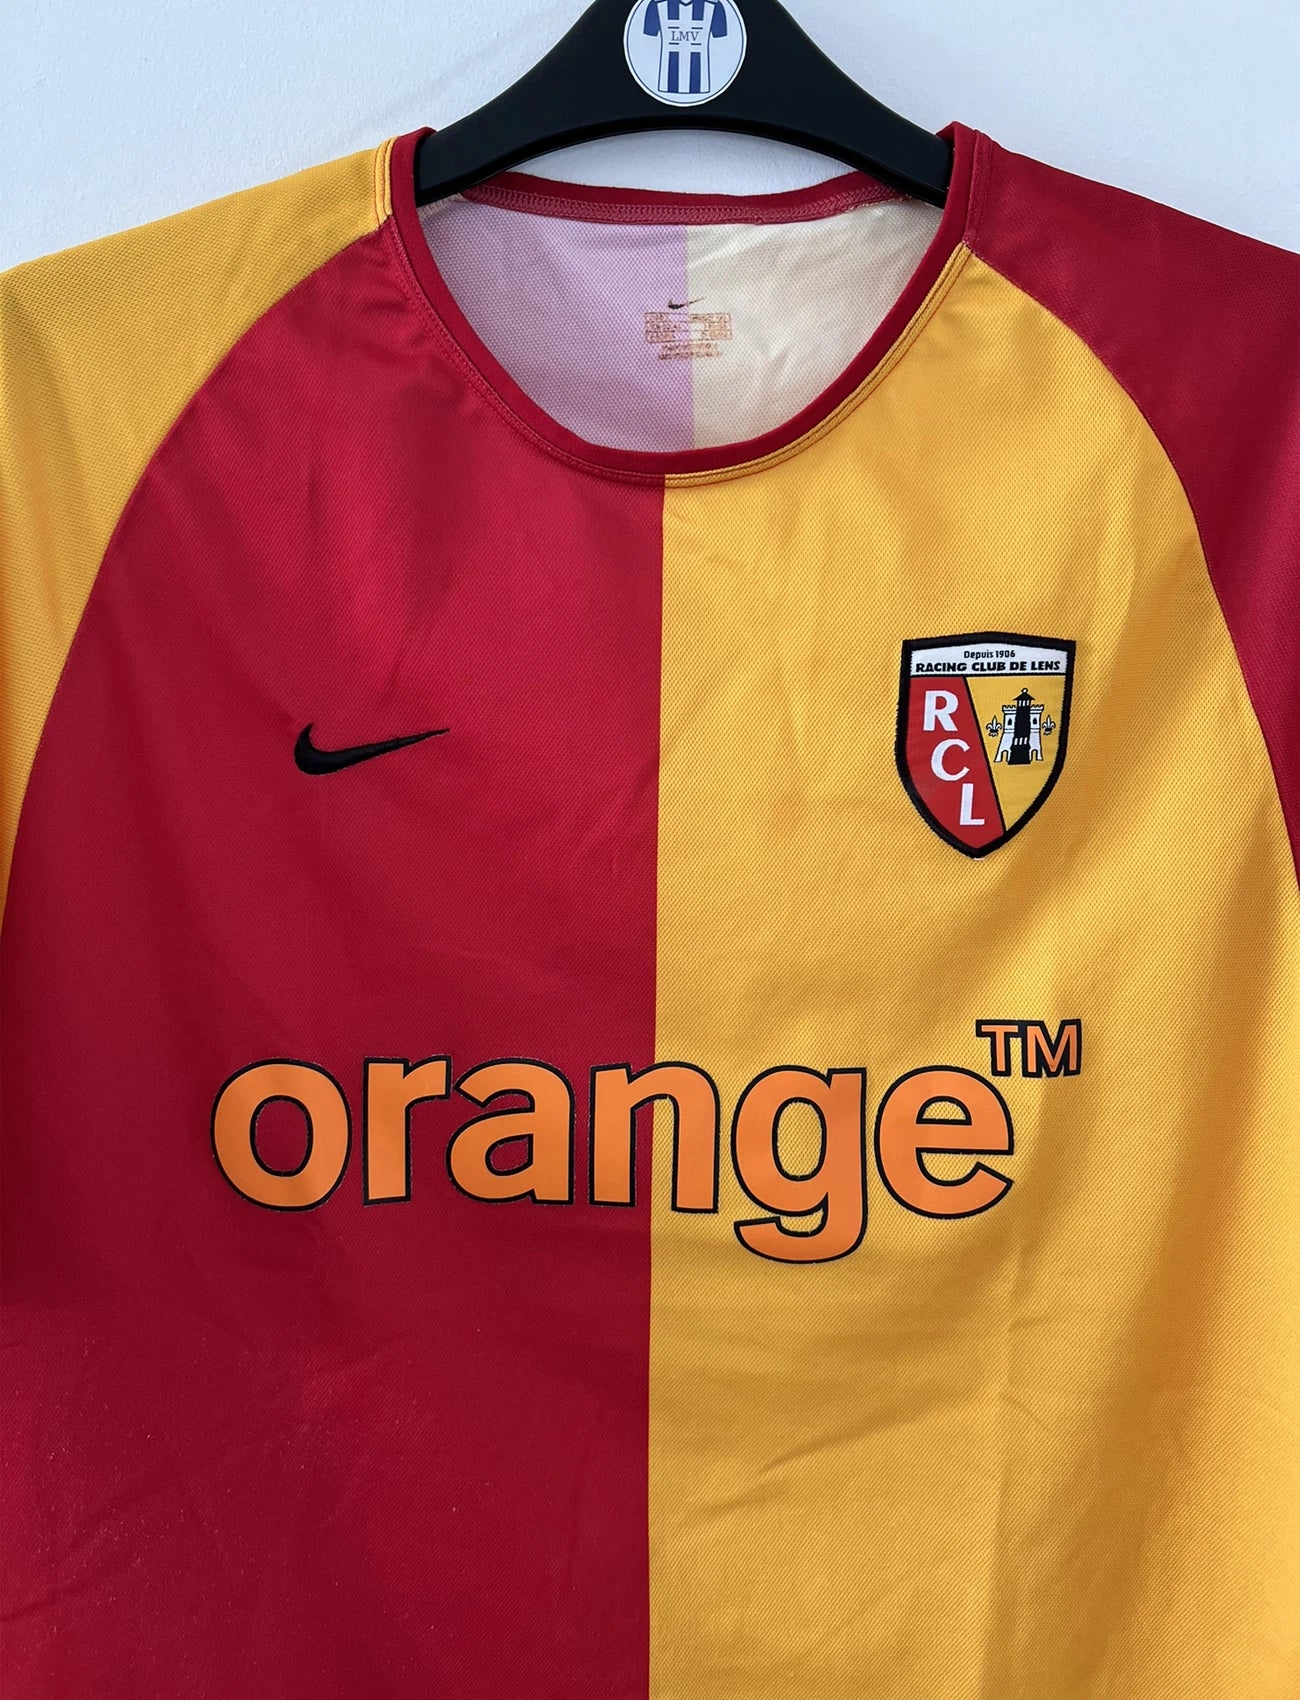 Maillot de foot vintage domicile du rc lens de la saison 2003-2004. On peut retrouver l'équipementier nike et le sponsor Orange. Le maillot est de couleur jaune et rouge. Il s'agit d'un maillot authentique comportant l'étiquette avec les numéros 112760